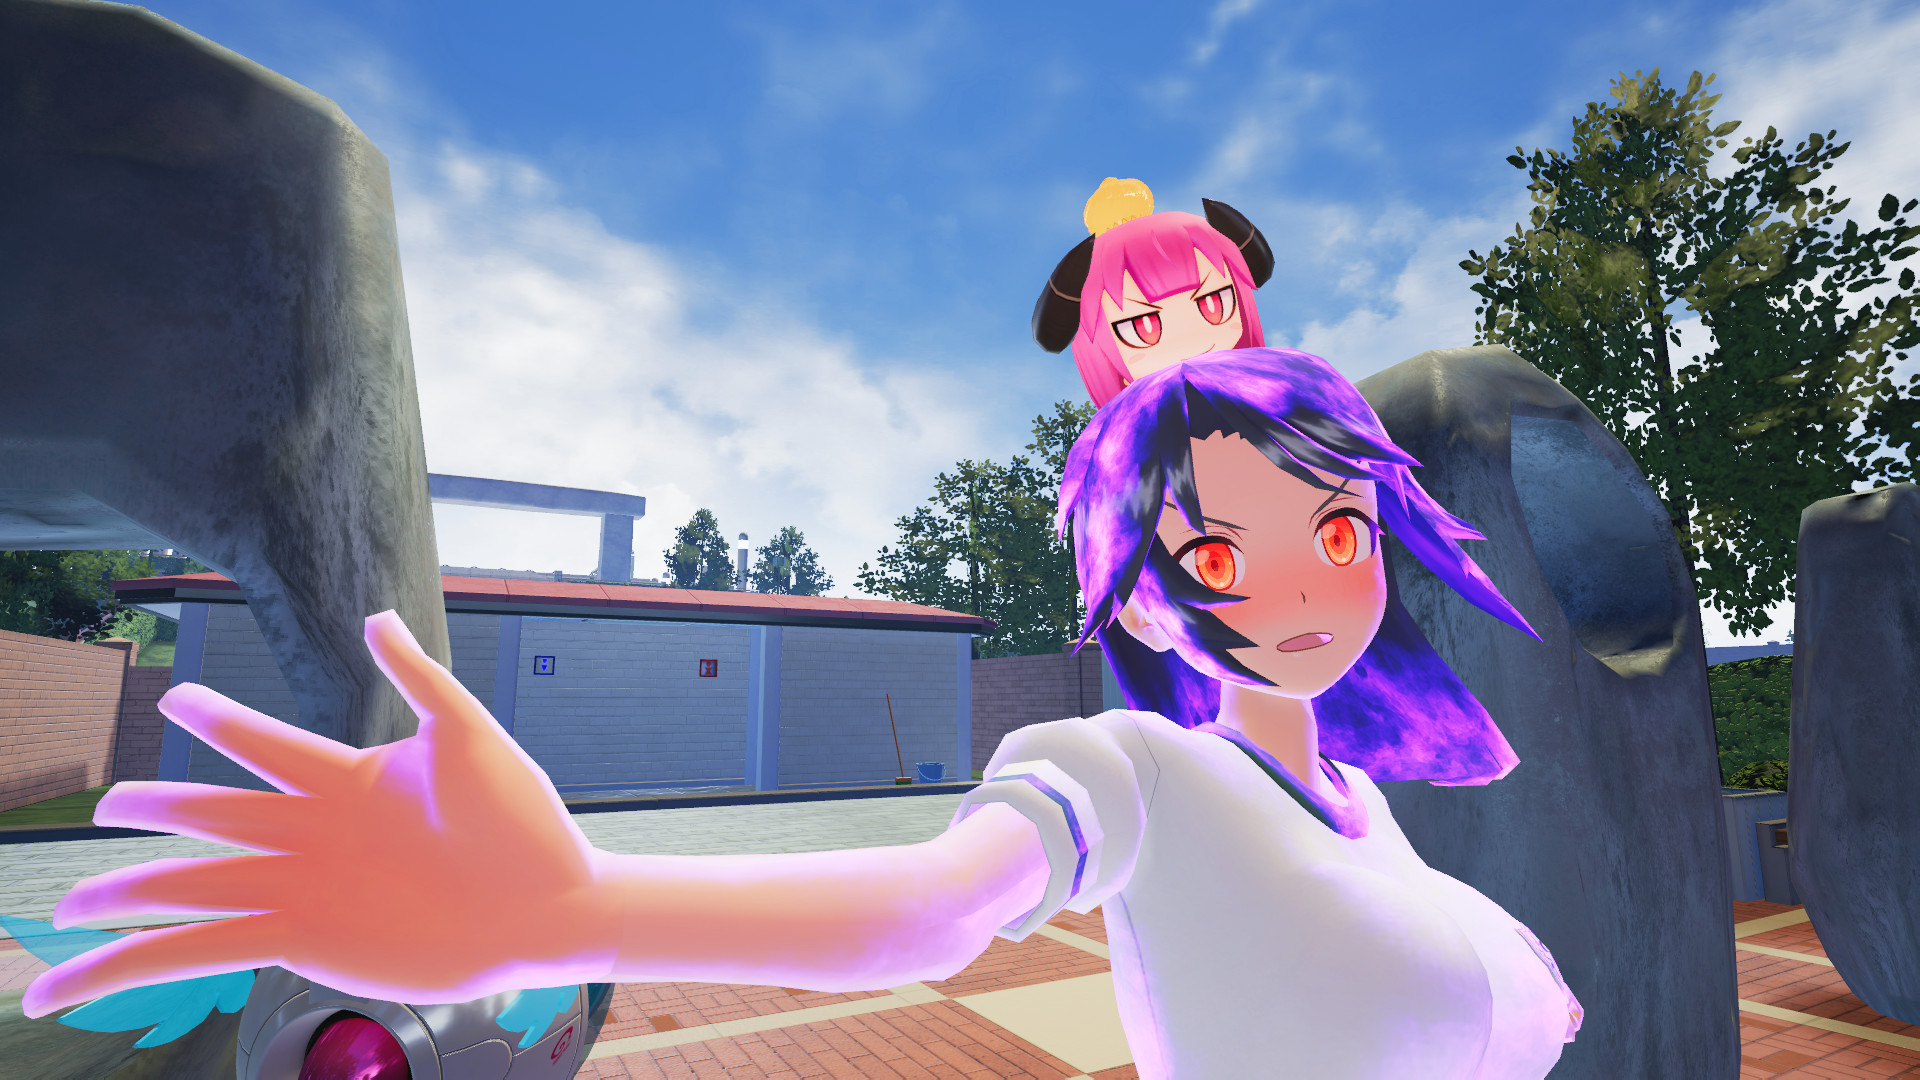 《少女射击2》VR版DLC发布 零距离和美女搞事情